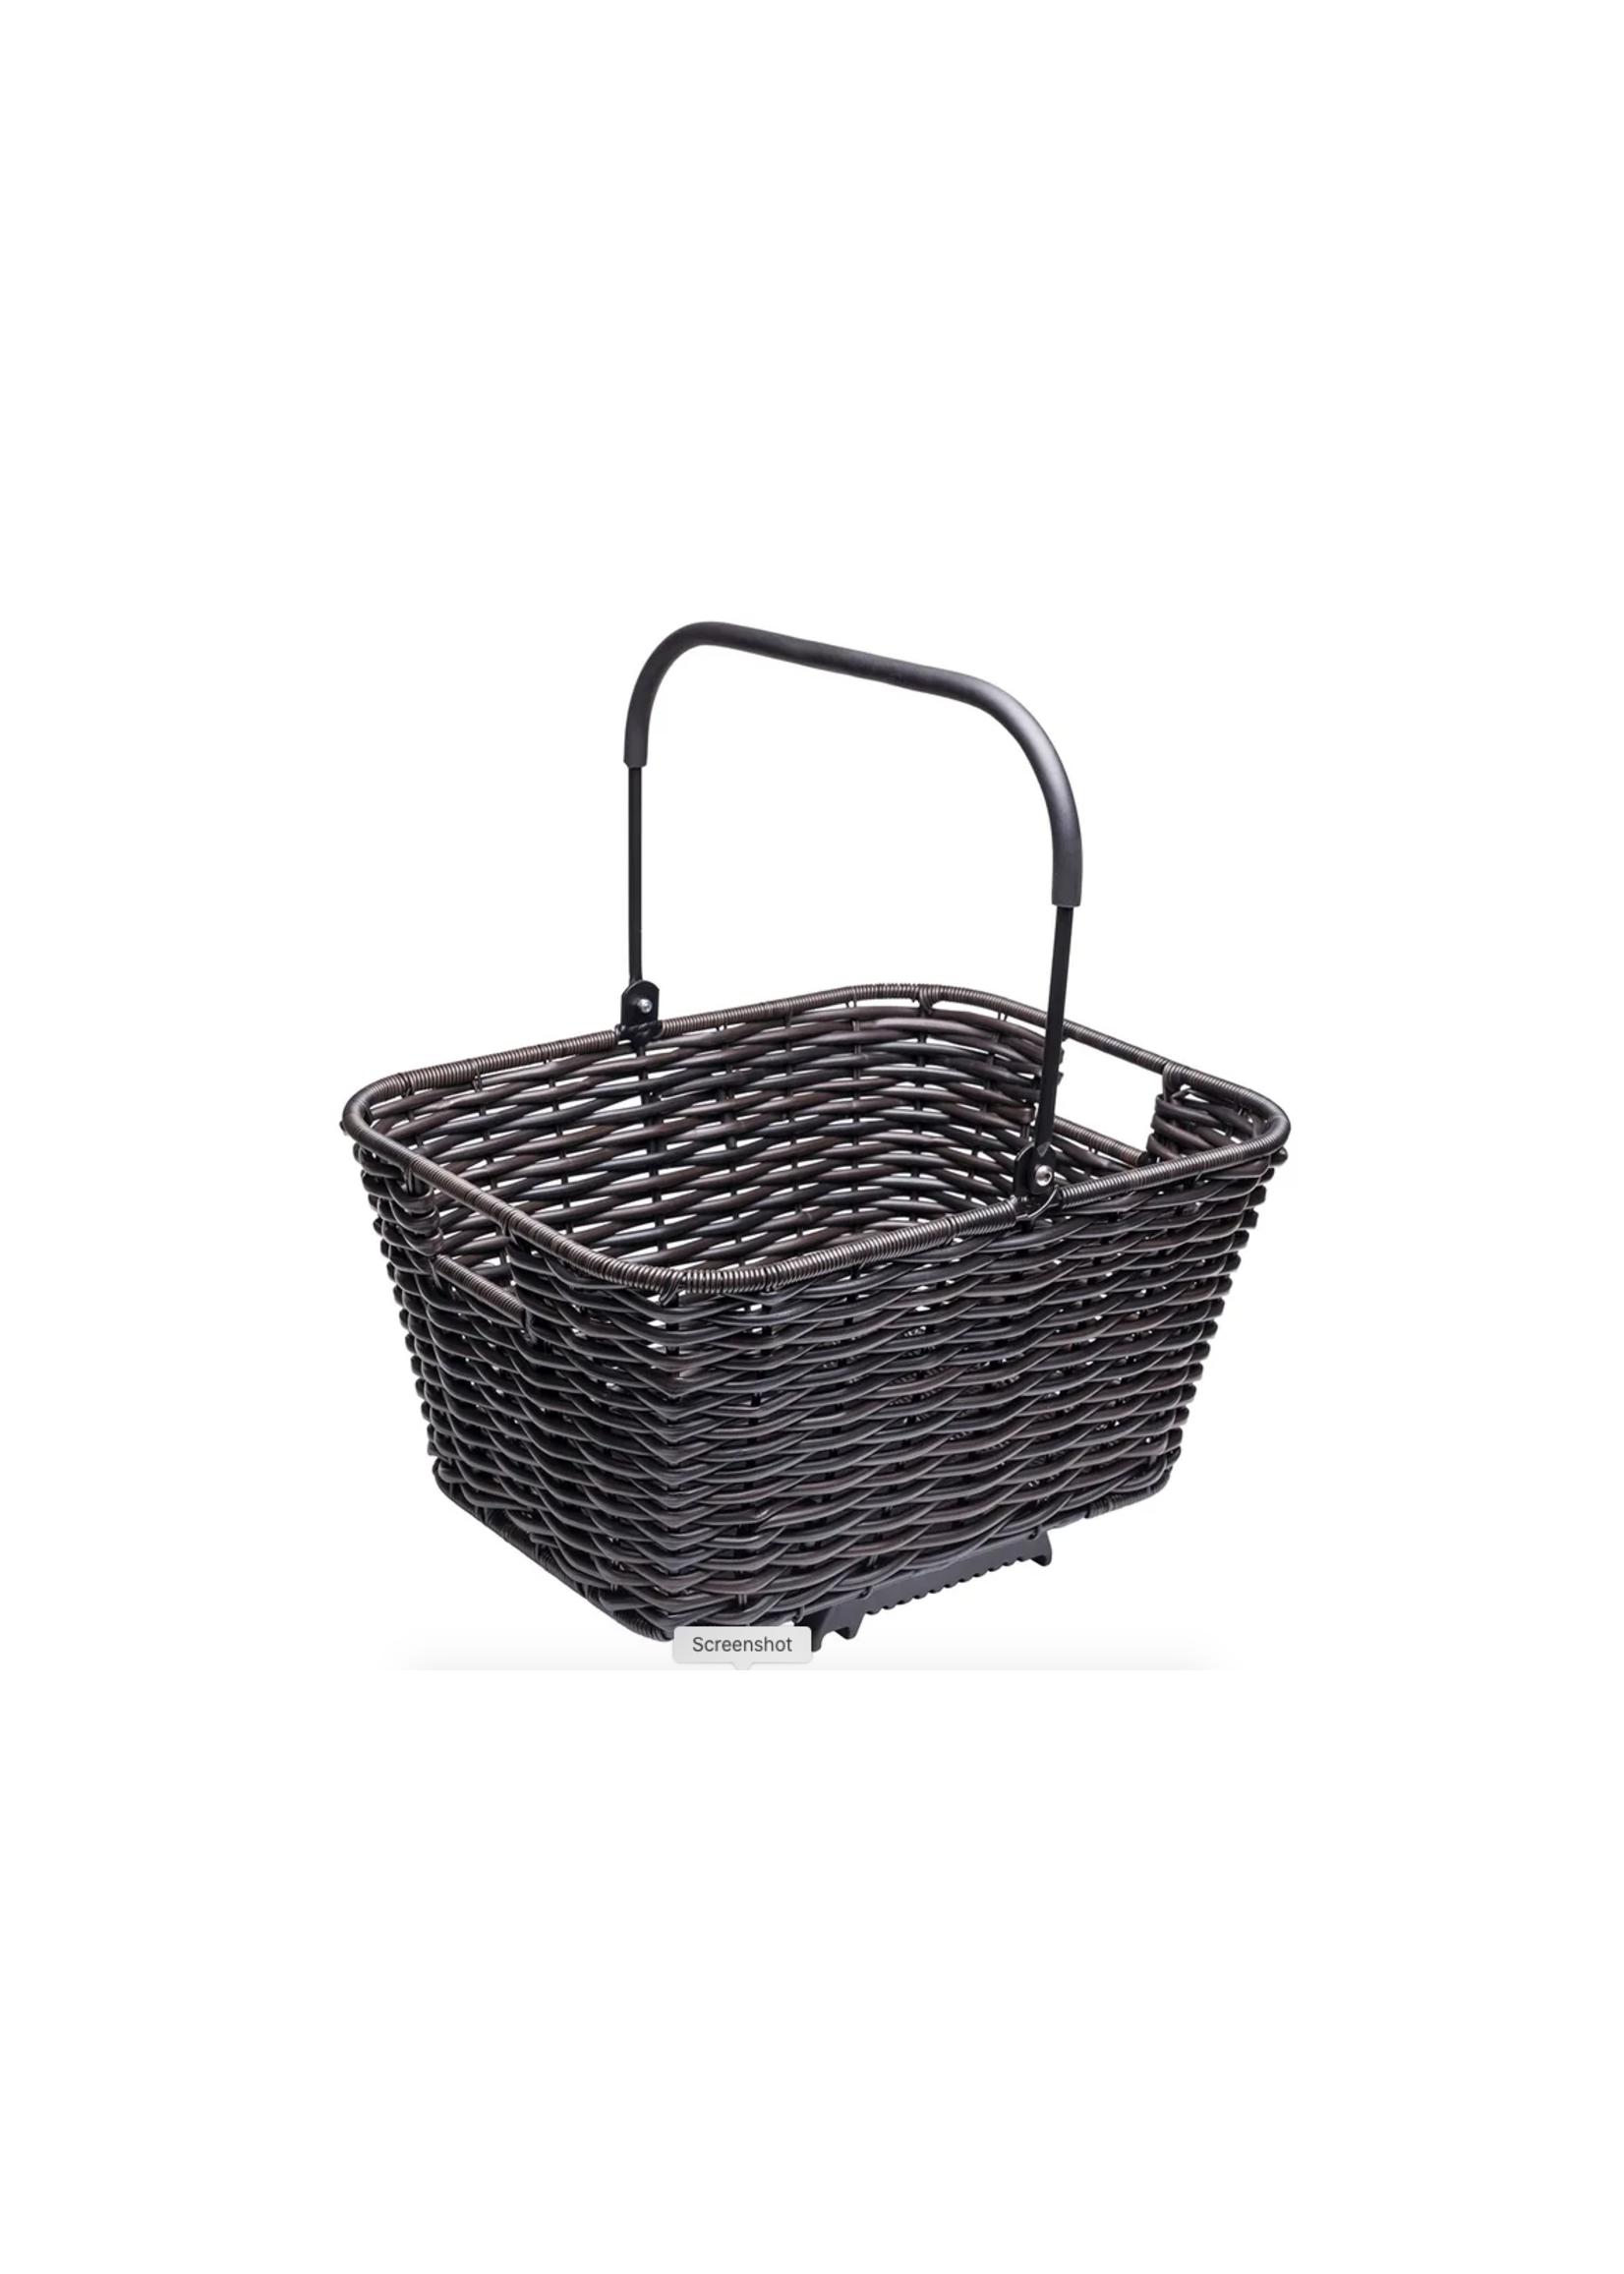 Tern eBikes Tern Basket Market Brown Wicker-Look 23L w/Klickfix quick release rack mount